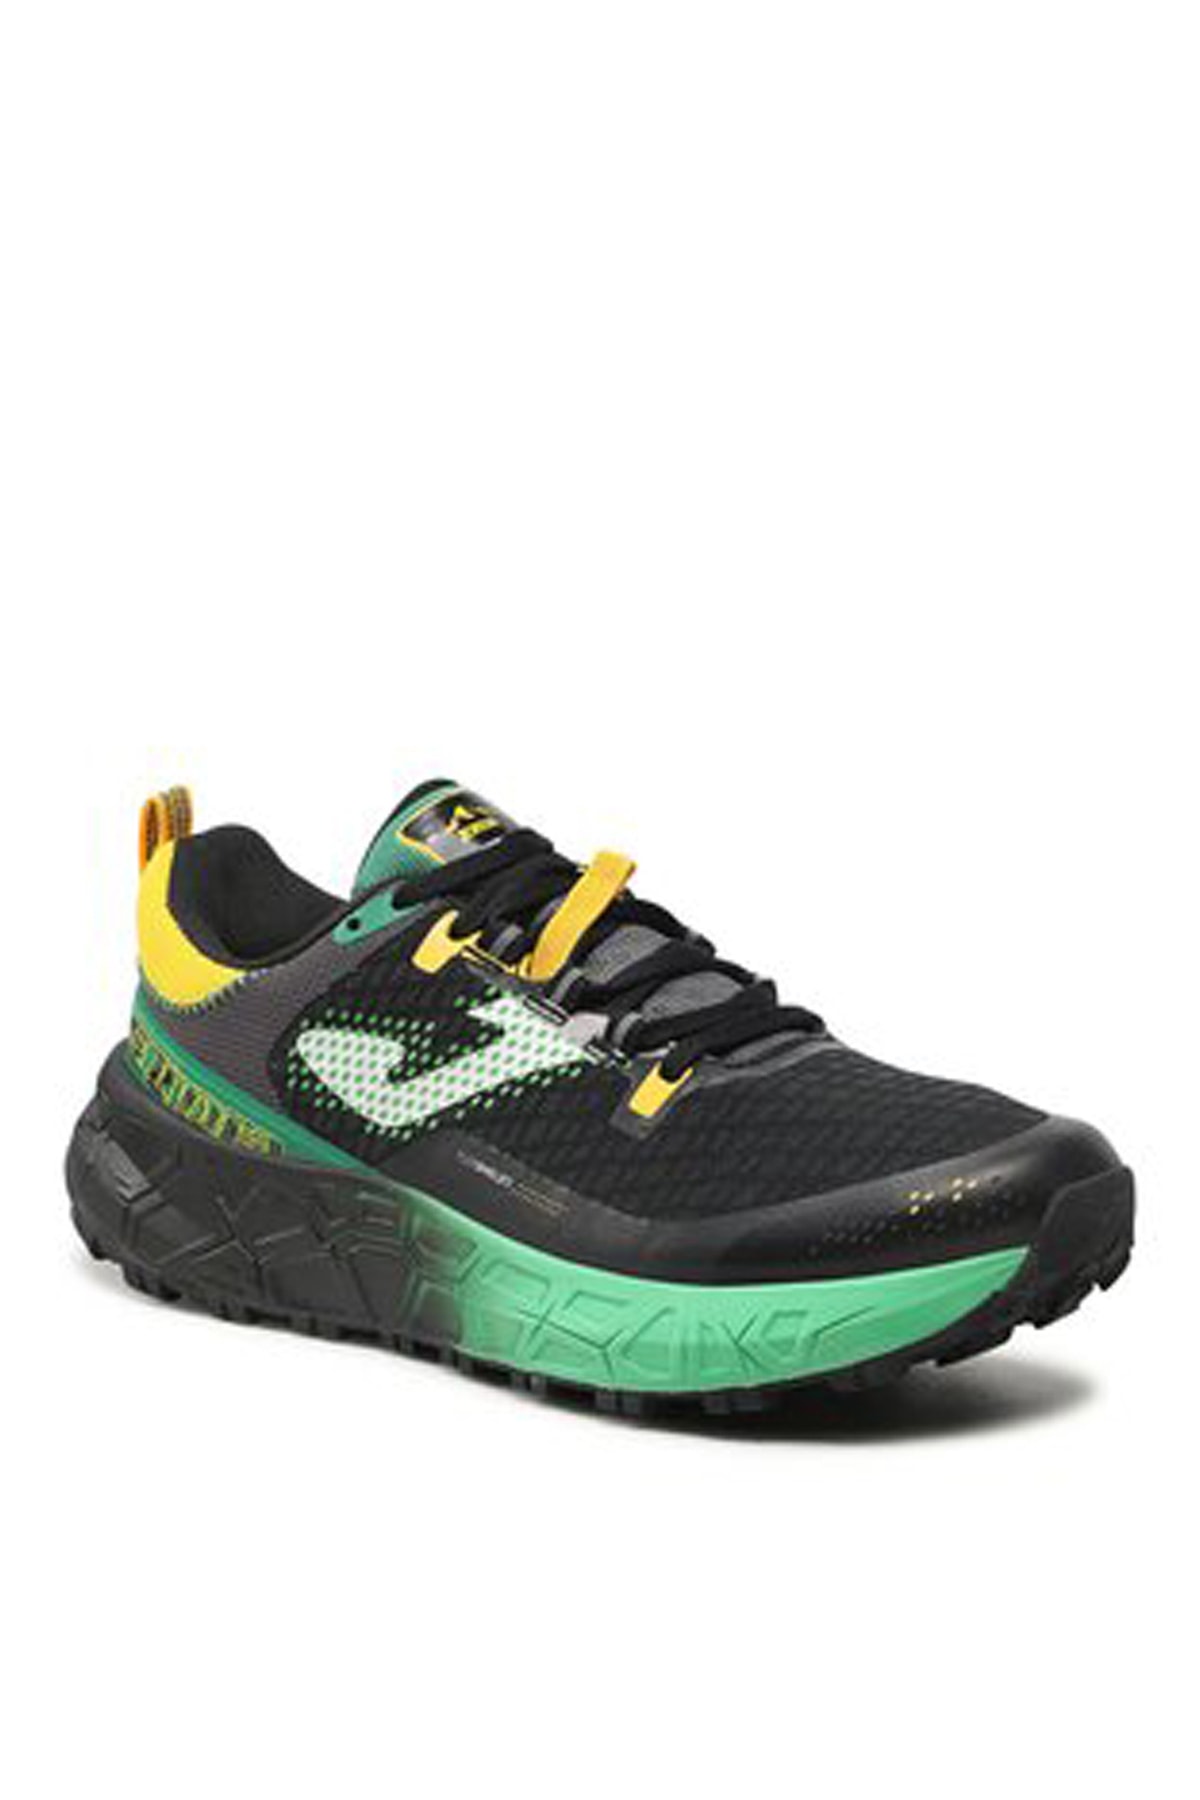 Joma Siyah - Yeşil Erkek Yürüyüş Ayakkabısı Tksımw2201-tk.sıma Men 2201 Black G